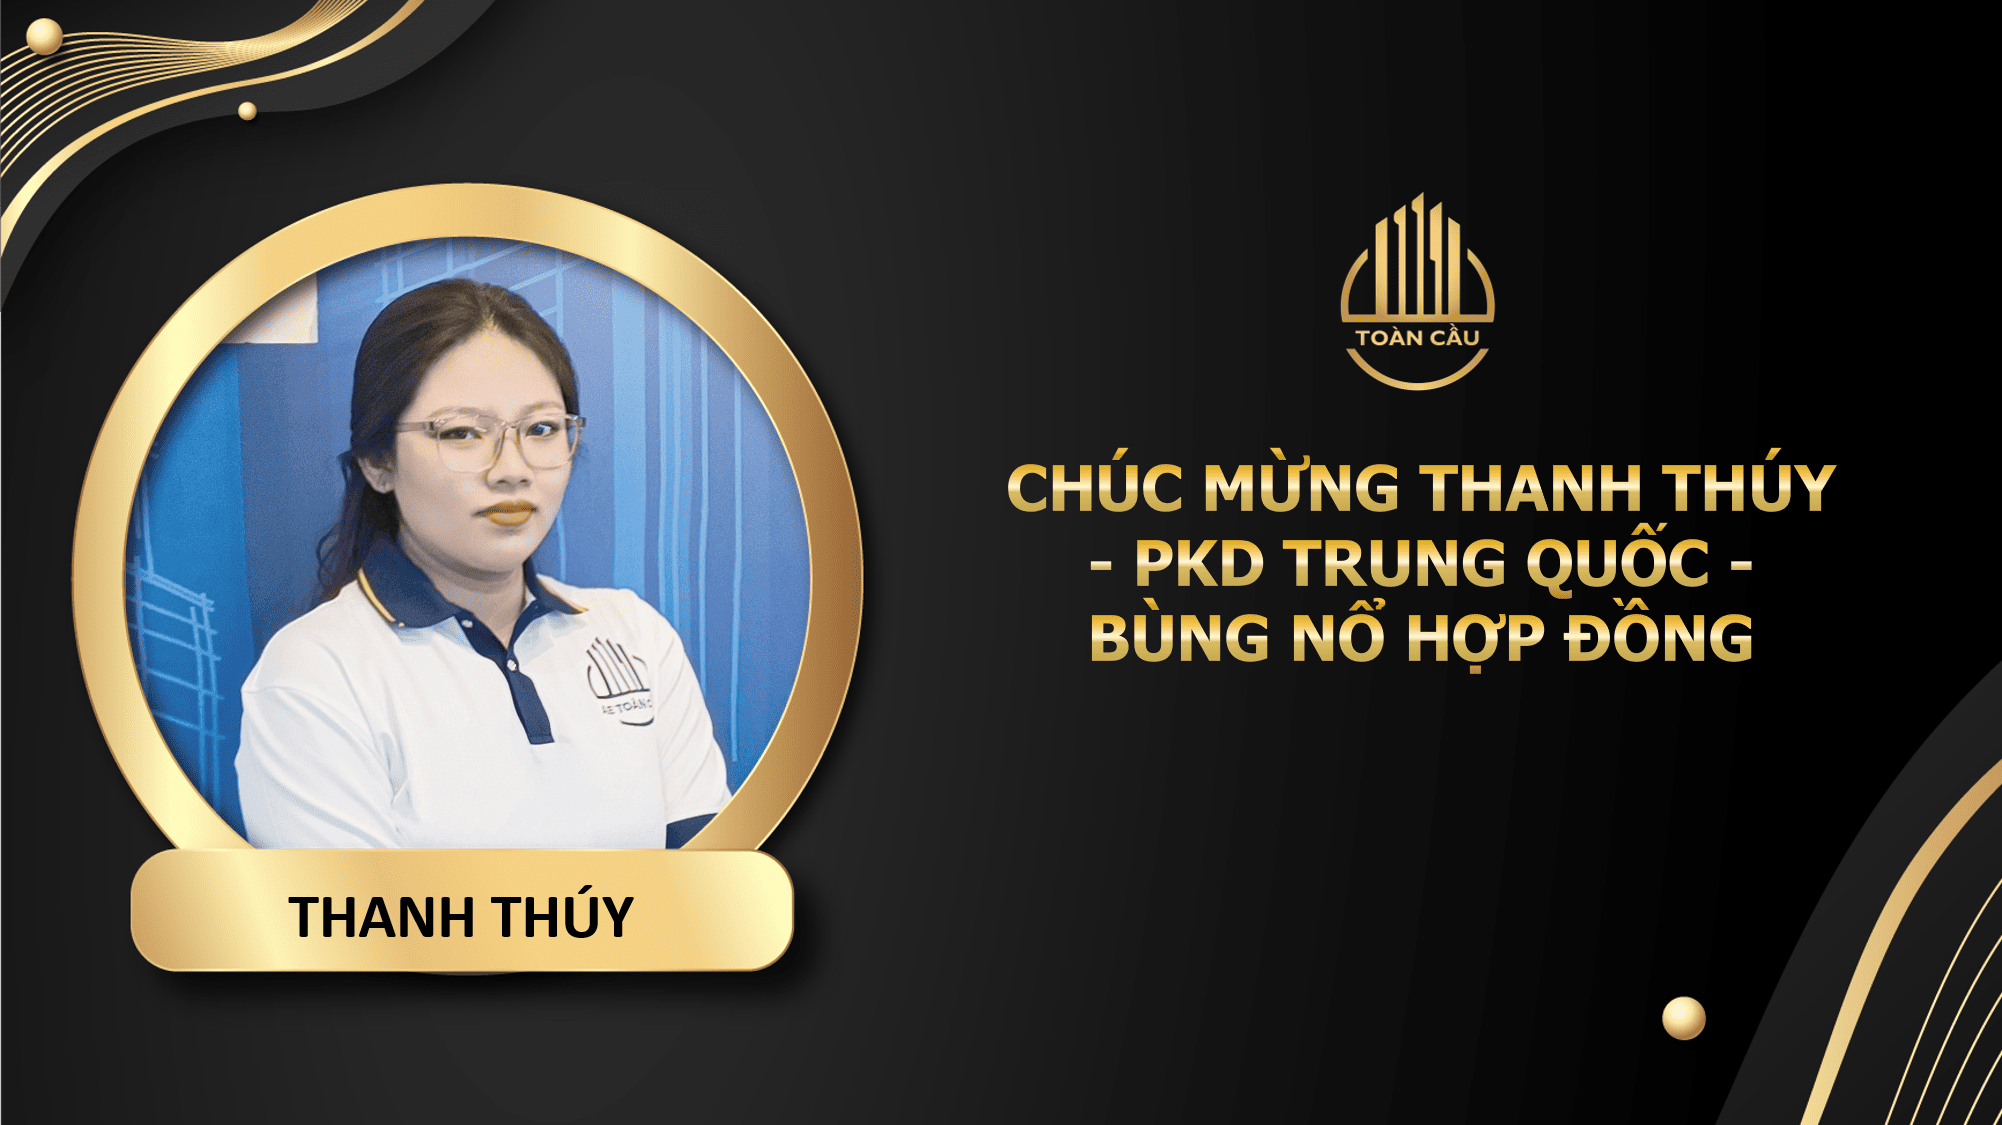 Chúc mừng NVKD Thanh Thúy